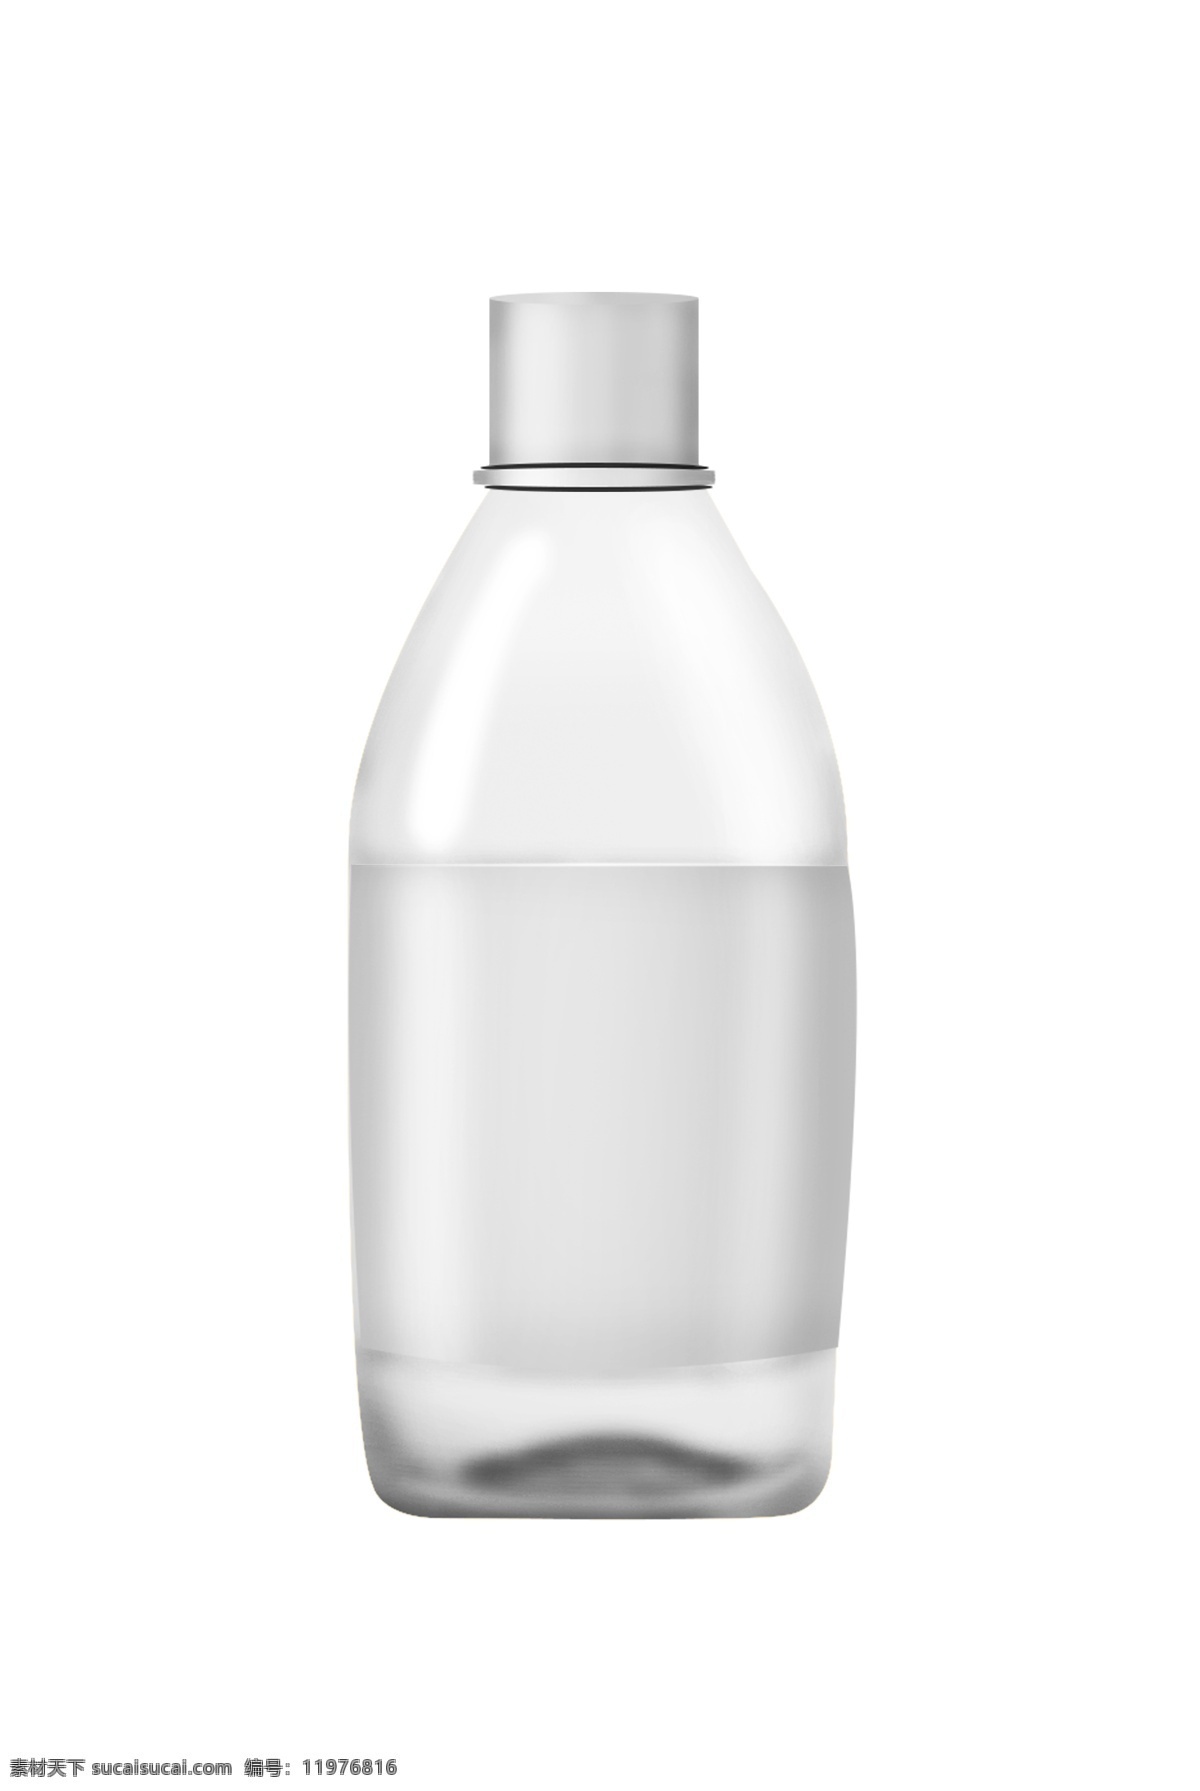 白色 酒瓶 装饰 插图 圆形瓶子 白色瓶子 卡通瓶子 透明瓶子 创意瓶子 时尚的瓶子 瓶子图案 装饰瓶子